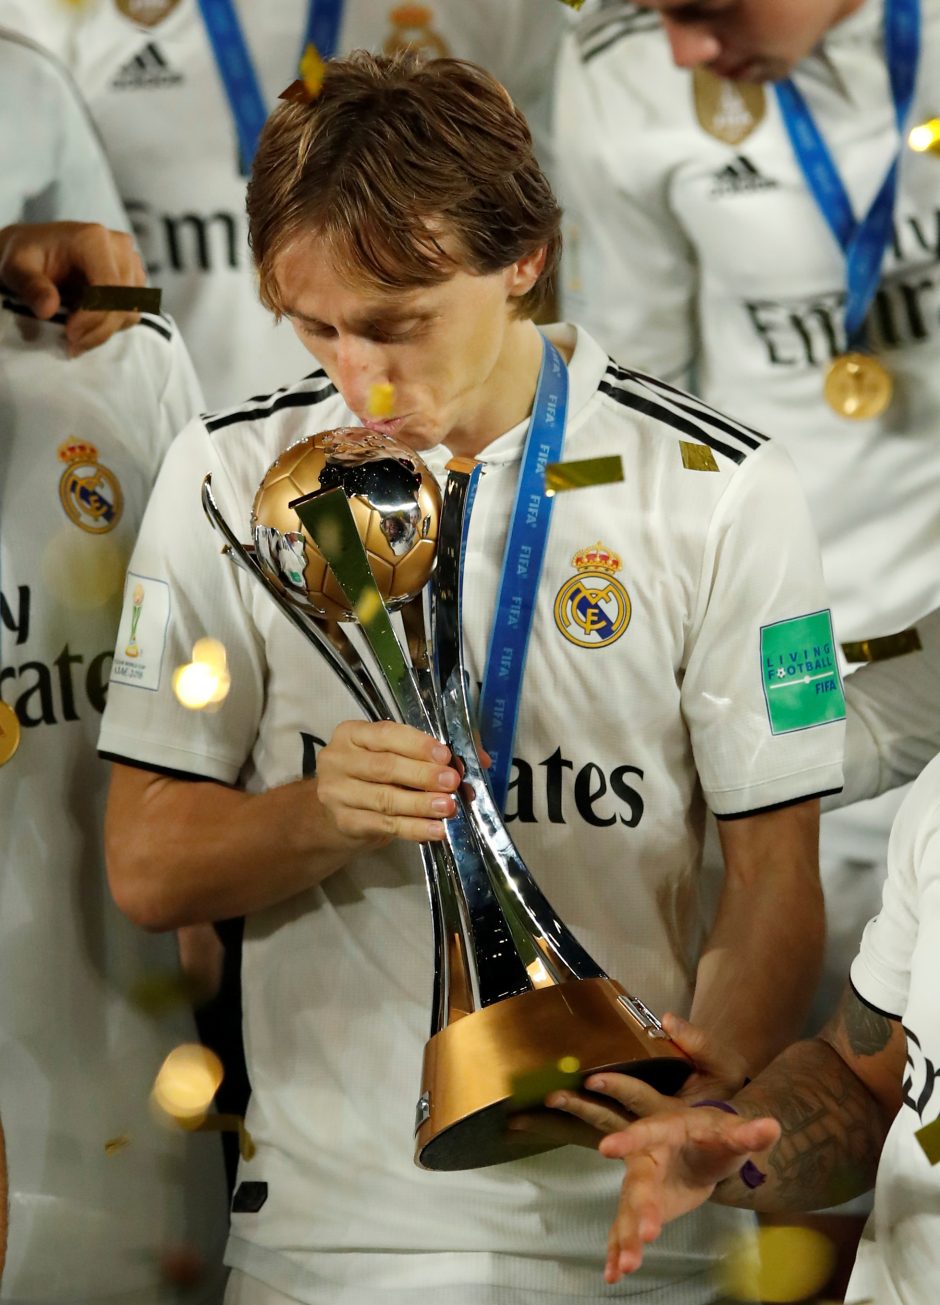 Ketvirtą kartą: Madrido „Real“ iškovojo FIFA pasaulio klubų taurę!